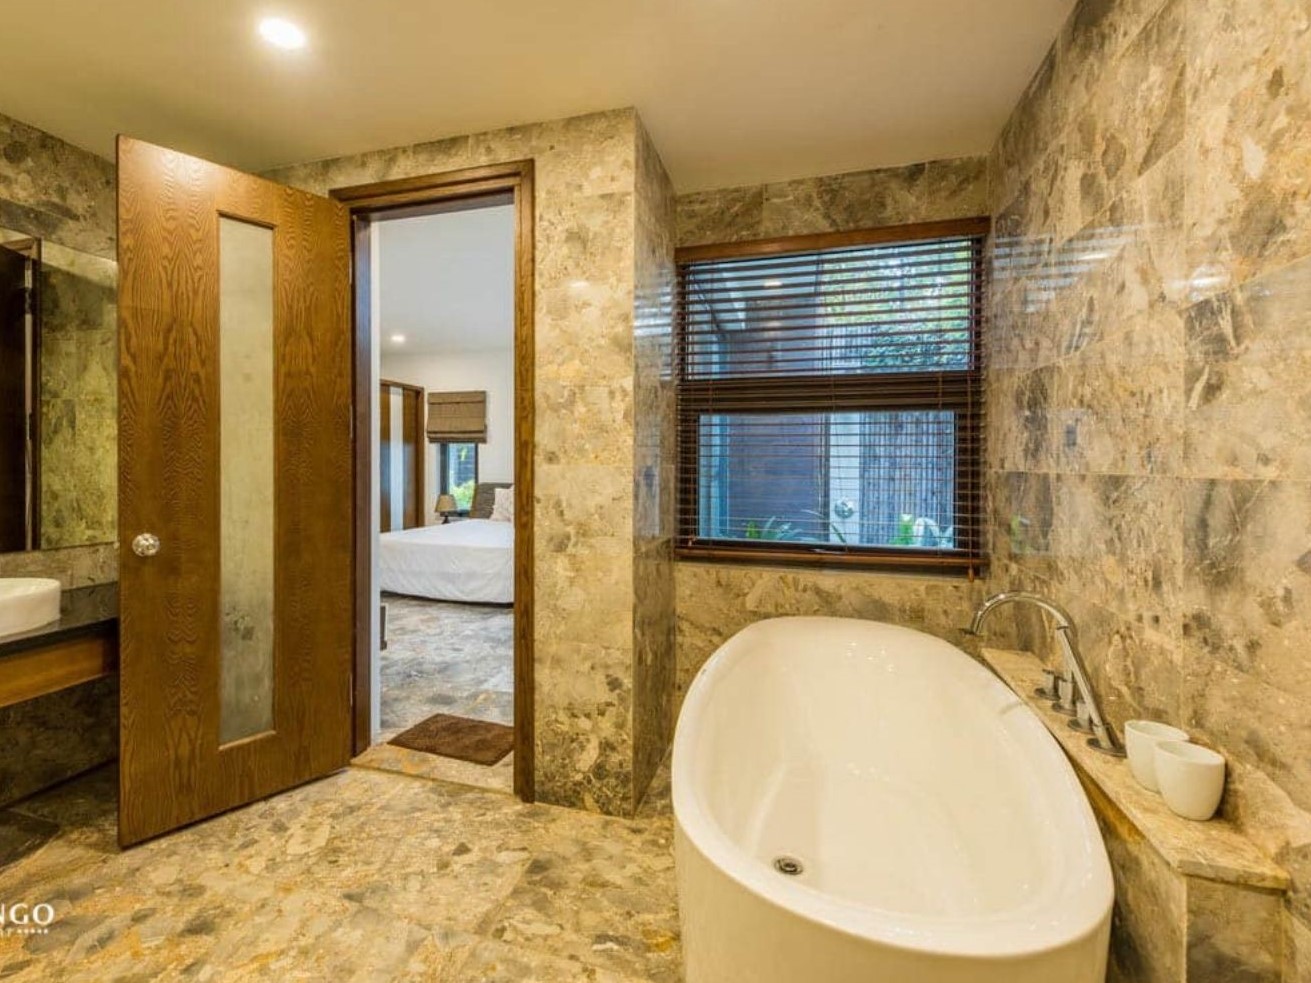 Là dòng đá tự nhiên được lựa chọn ốp tường khu vực vệ sinh thuộc không gian nội thất của ngôi nhà, thay thế cho việc sử dụng gạch thông thường.